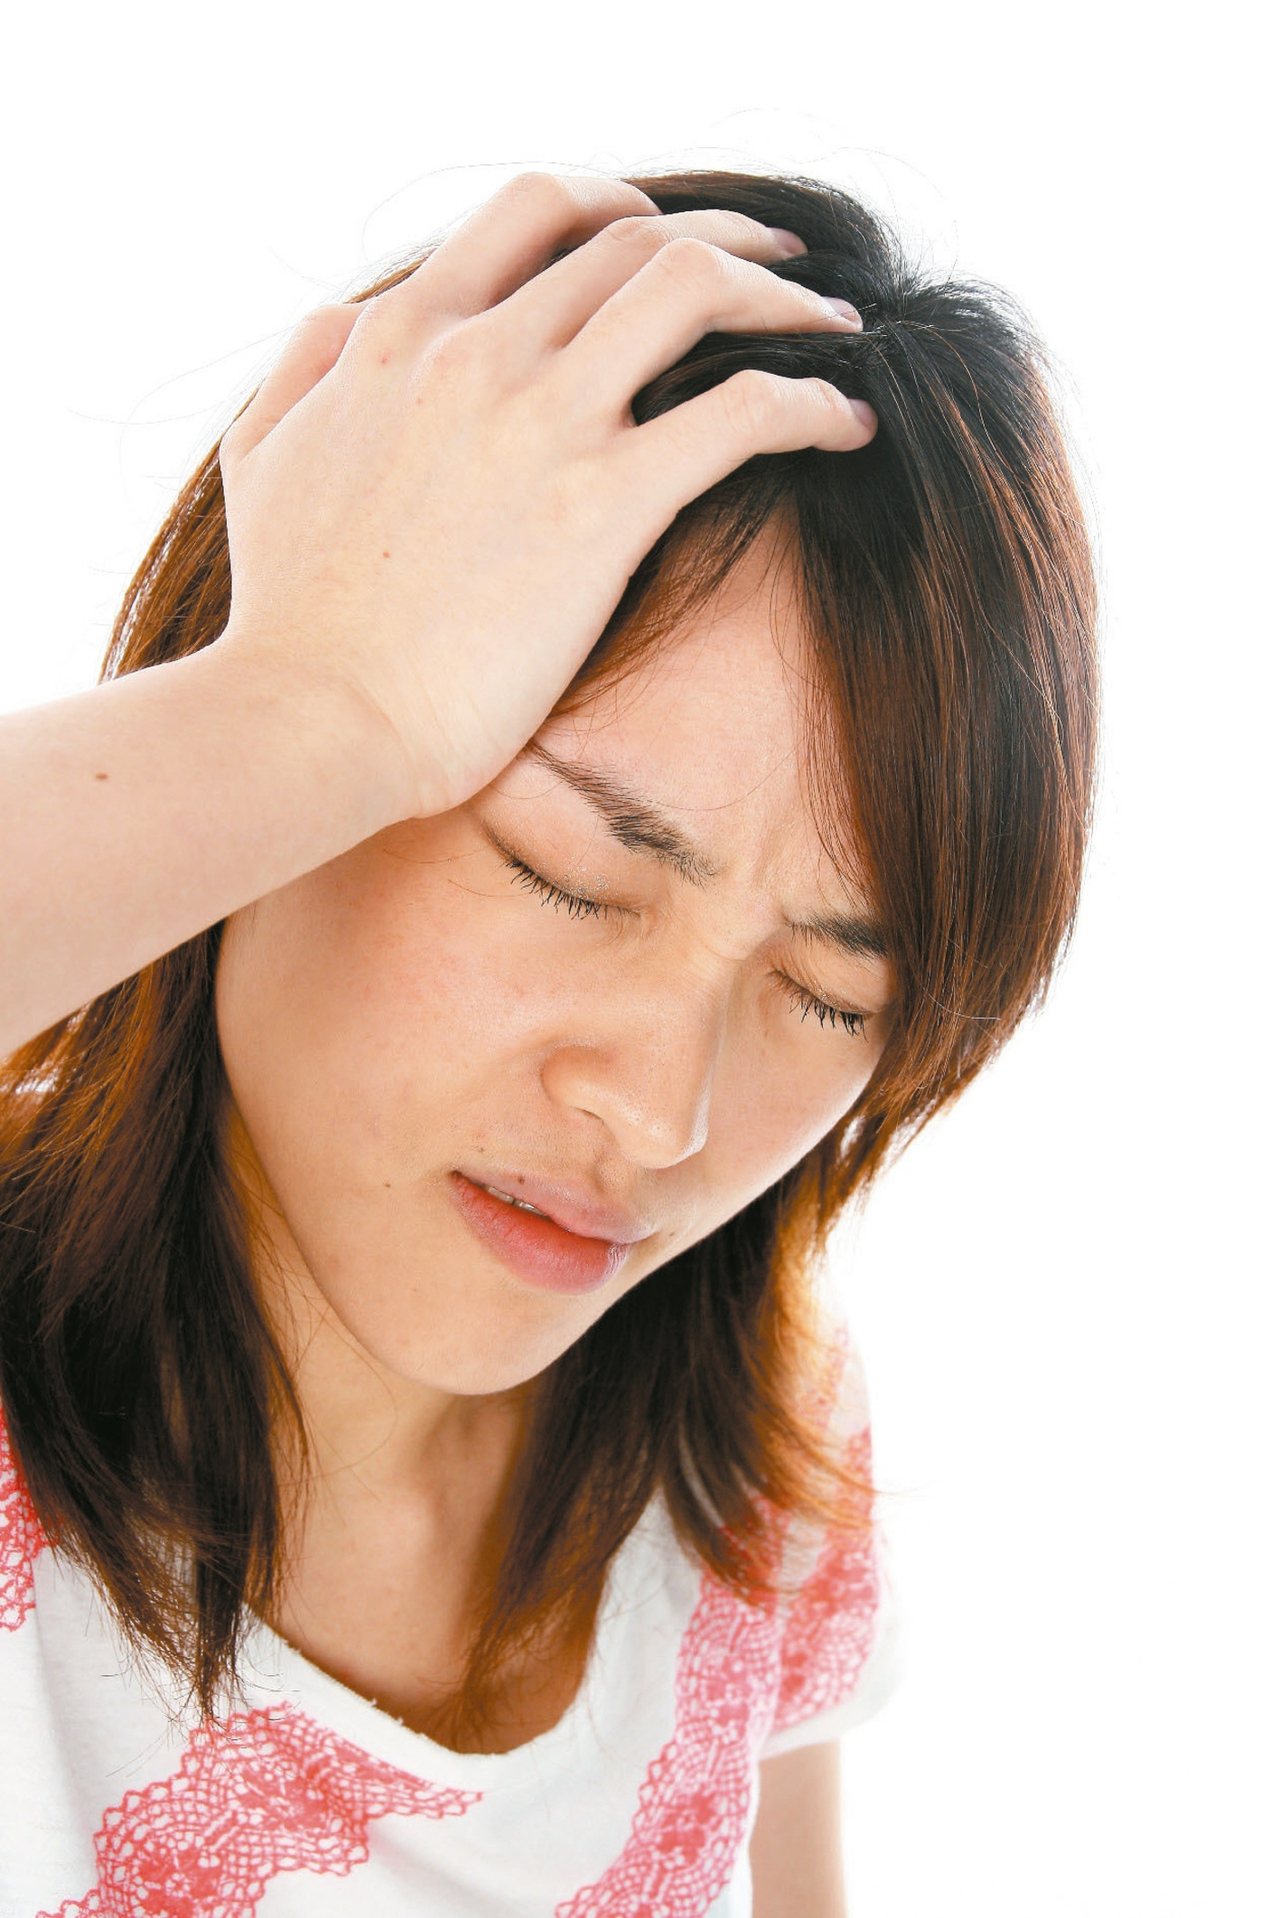 女性偏頭痛盛行率多於男性，且好發於經期期間。本報資料照片